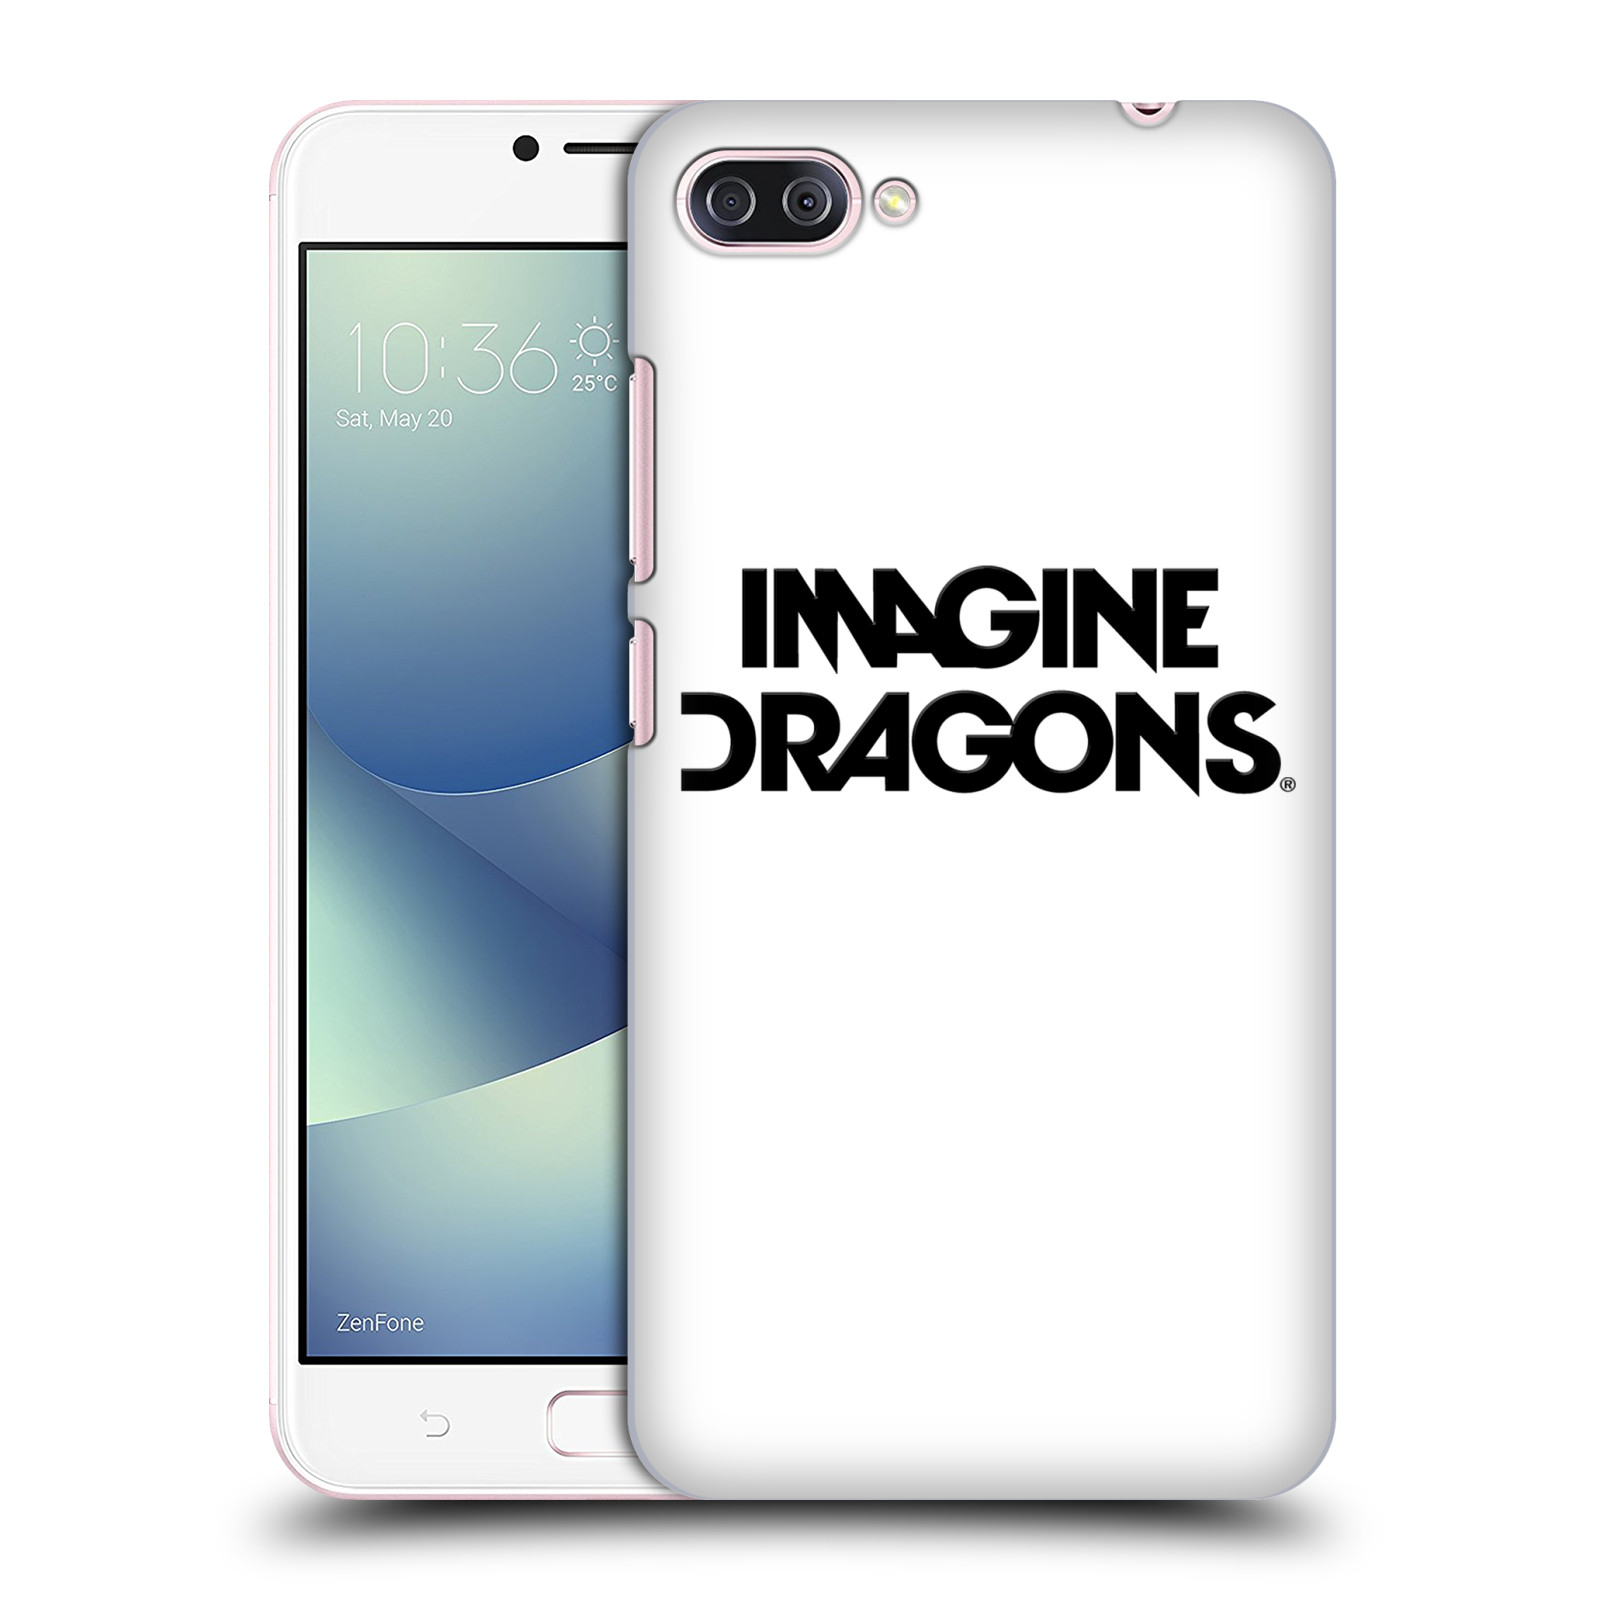 Zadní obal pro mobil Asus Zenfone 4 MAX / 4 MAX PRO (ZC554KL) - HEAD CASE - Hudební skupina Imagine Dragons - Logo